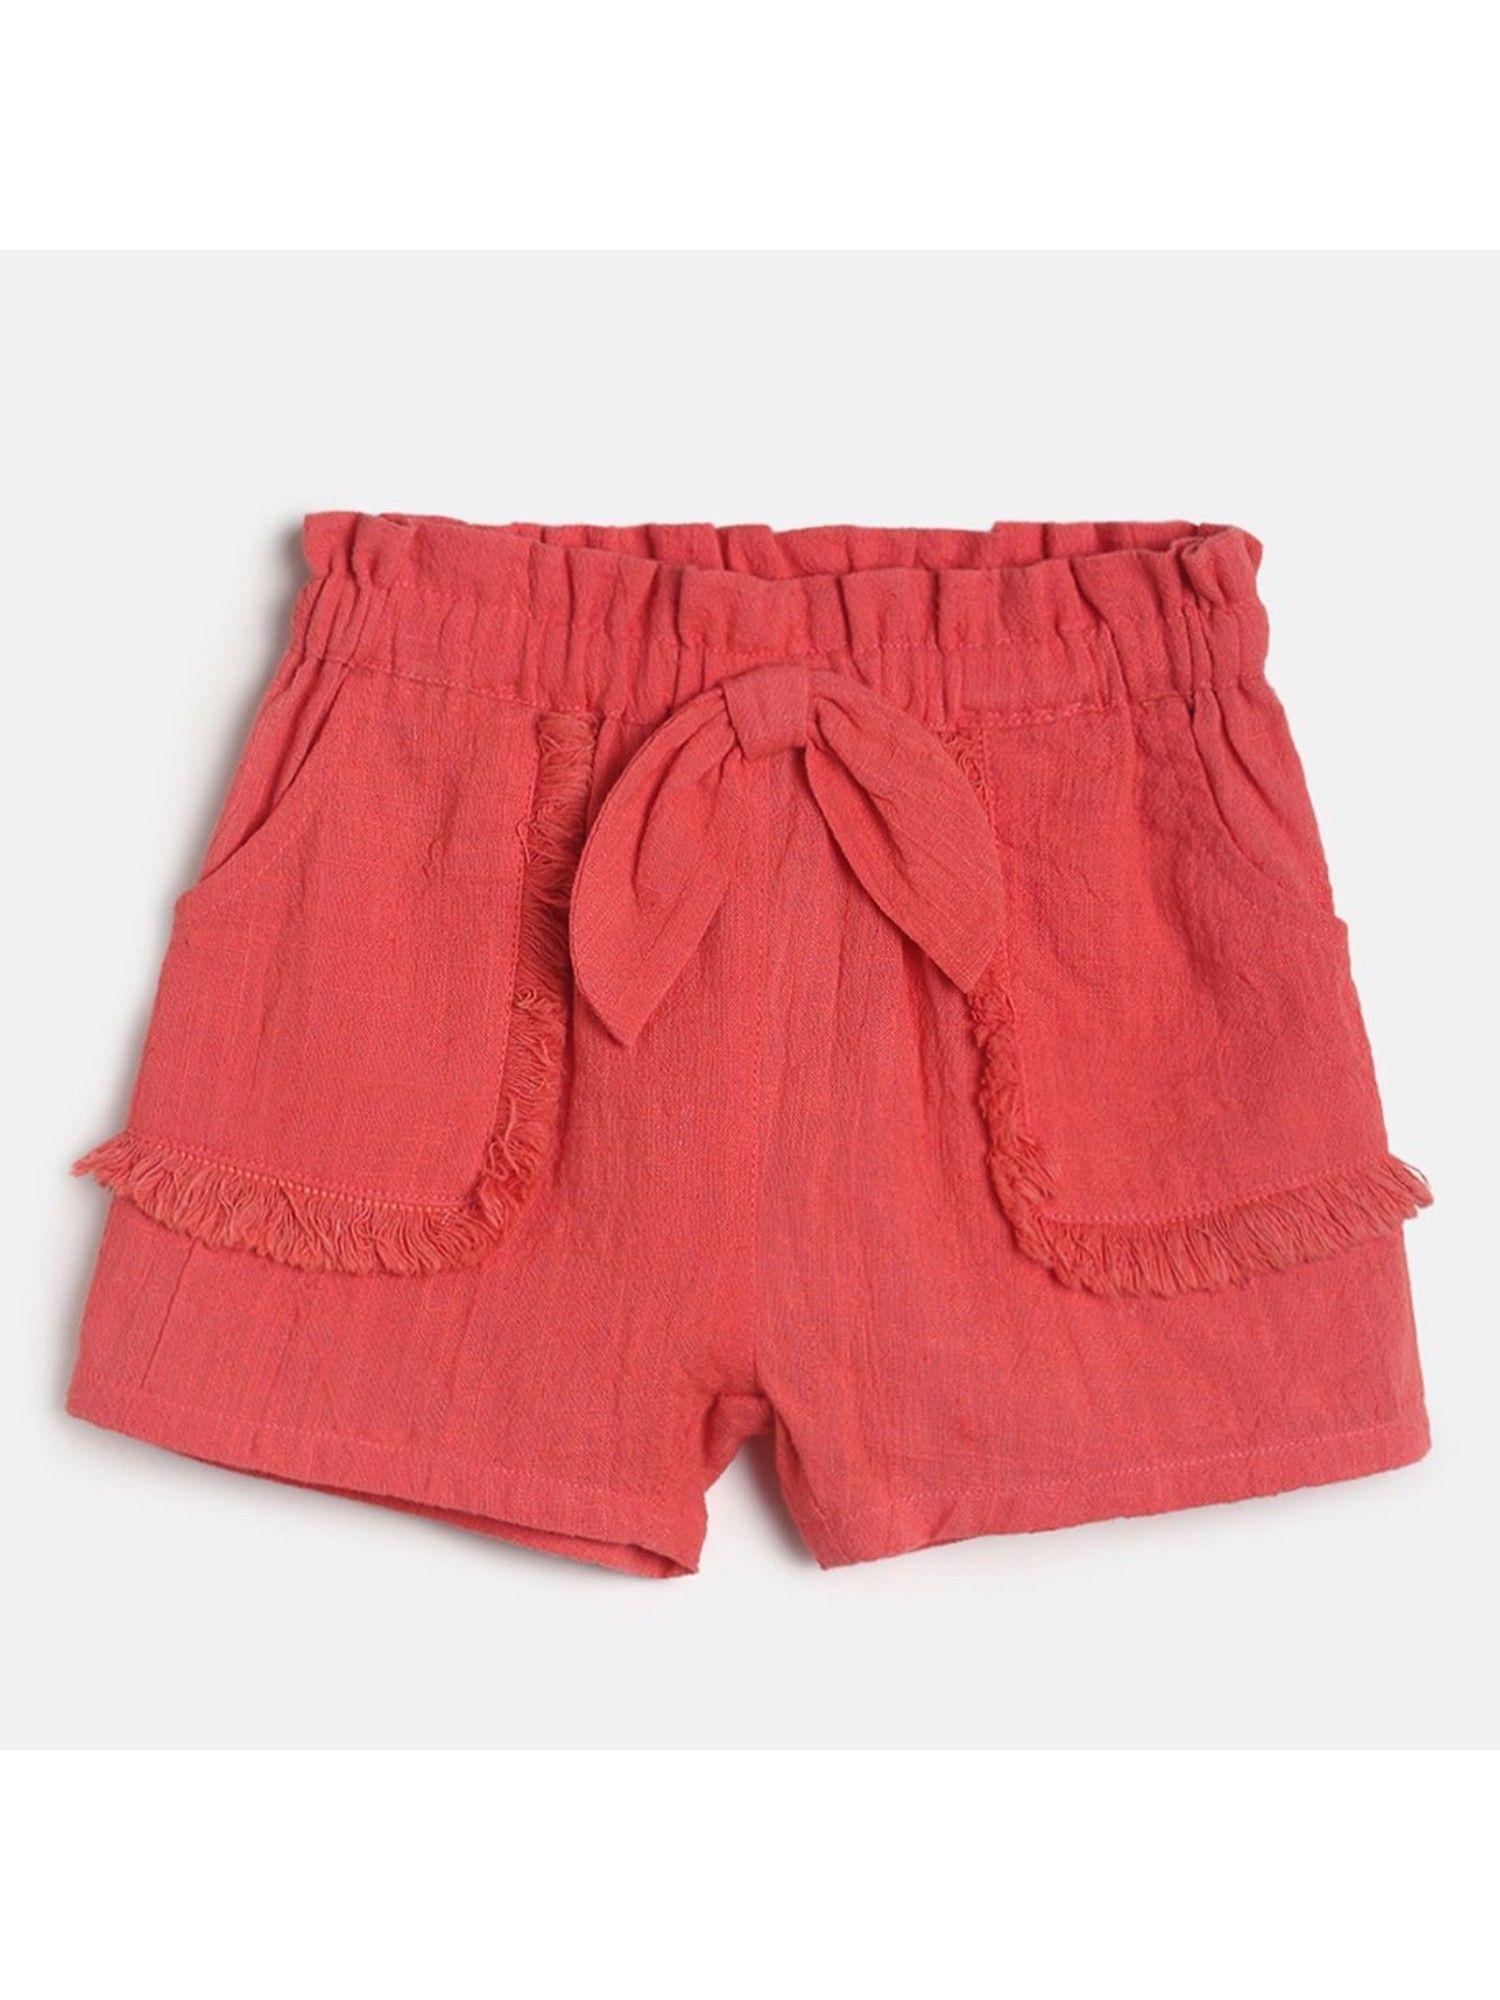 kids girls red shorts